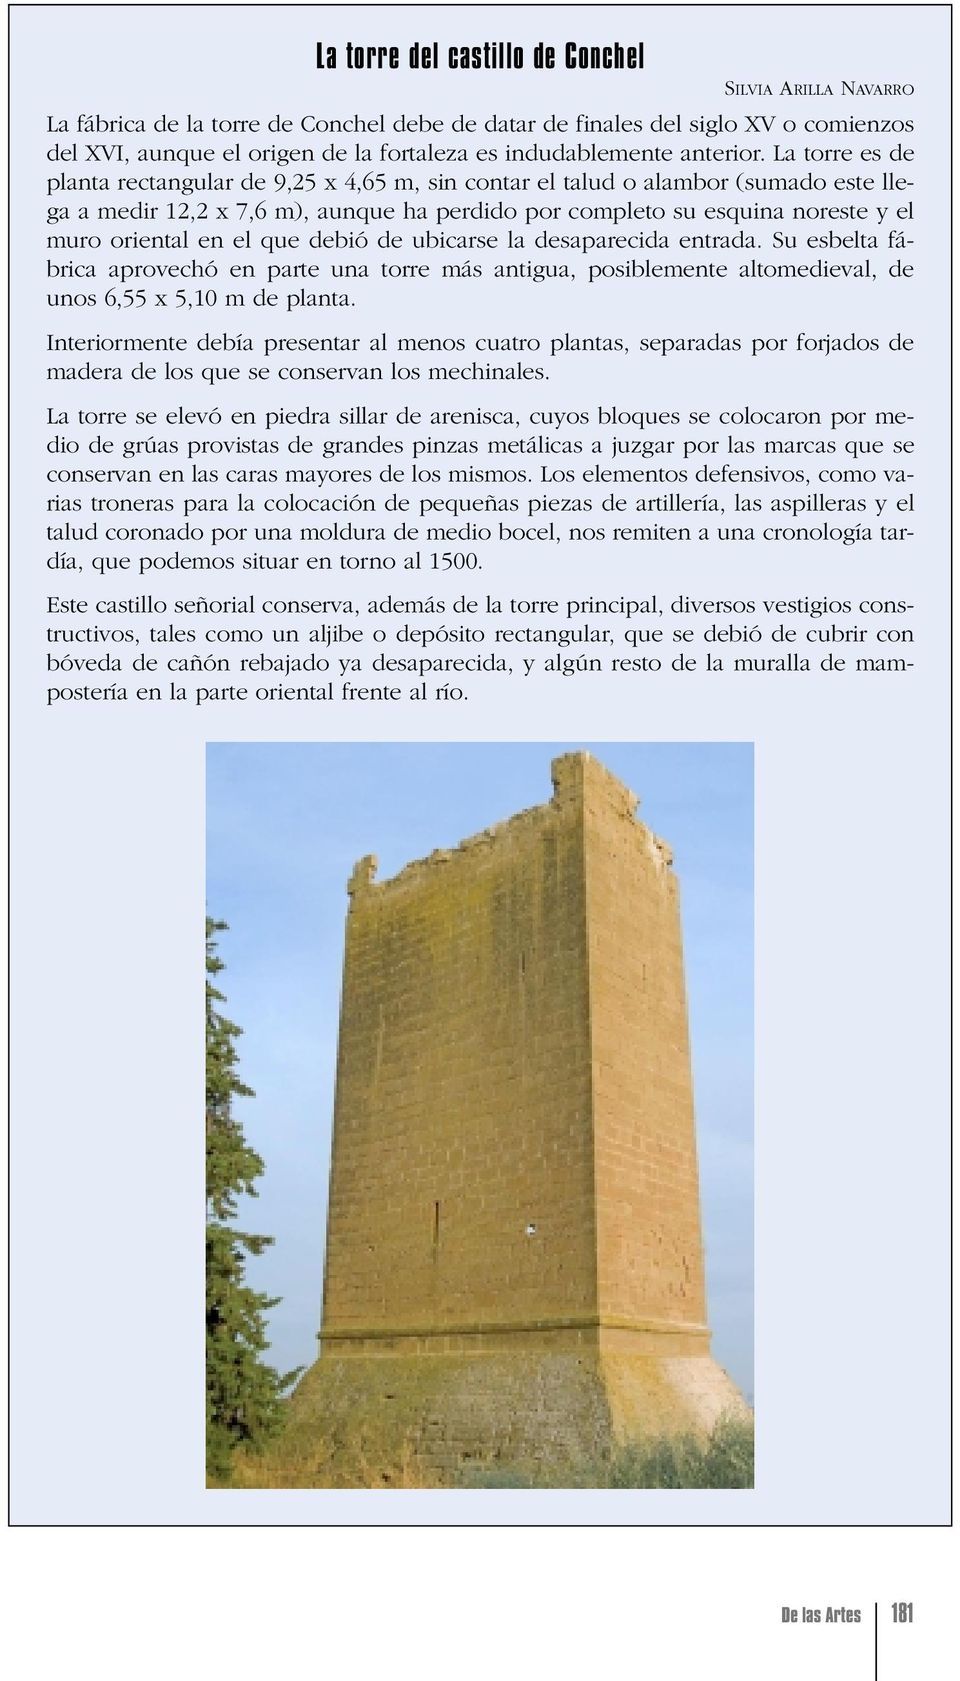 La torre es de planta rectangular de 9,25 x 4,65 m, sin contar el talud o alambor (sumado este llega a medir 12,2 x 7,6 m), aunque ha perdido por completo su esquina noreste y el muro oriental en el